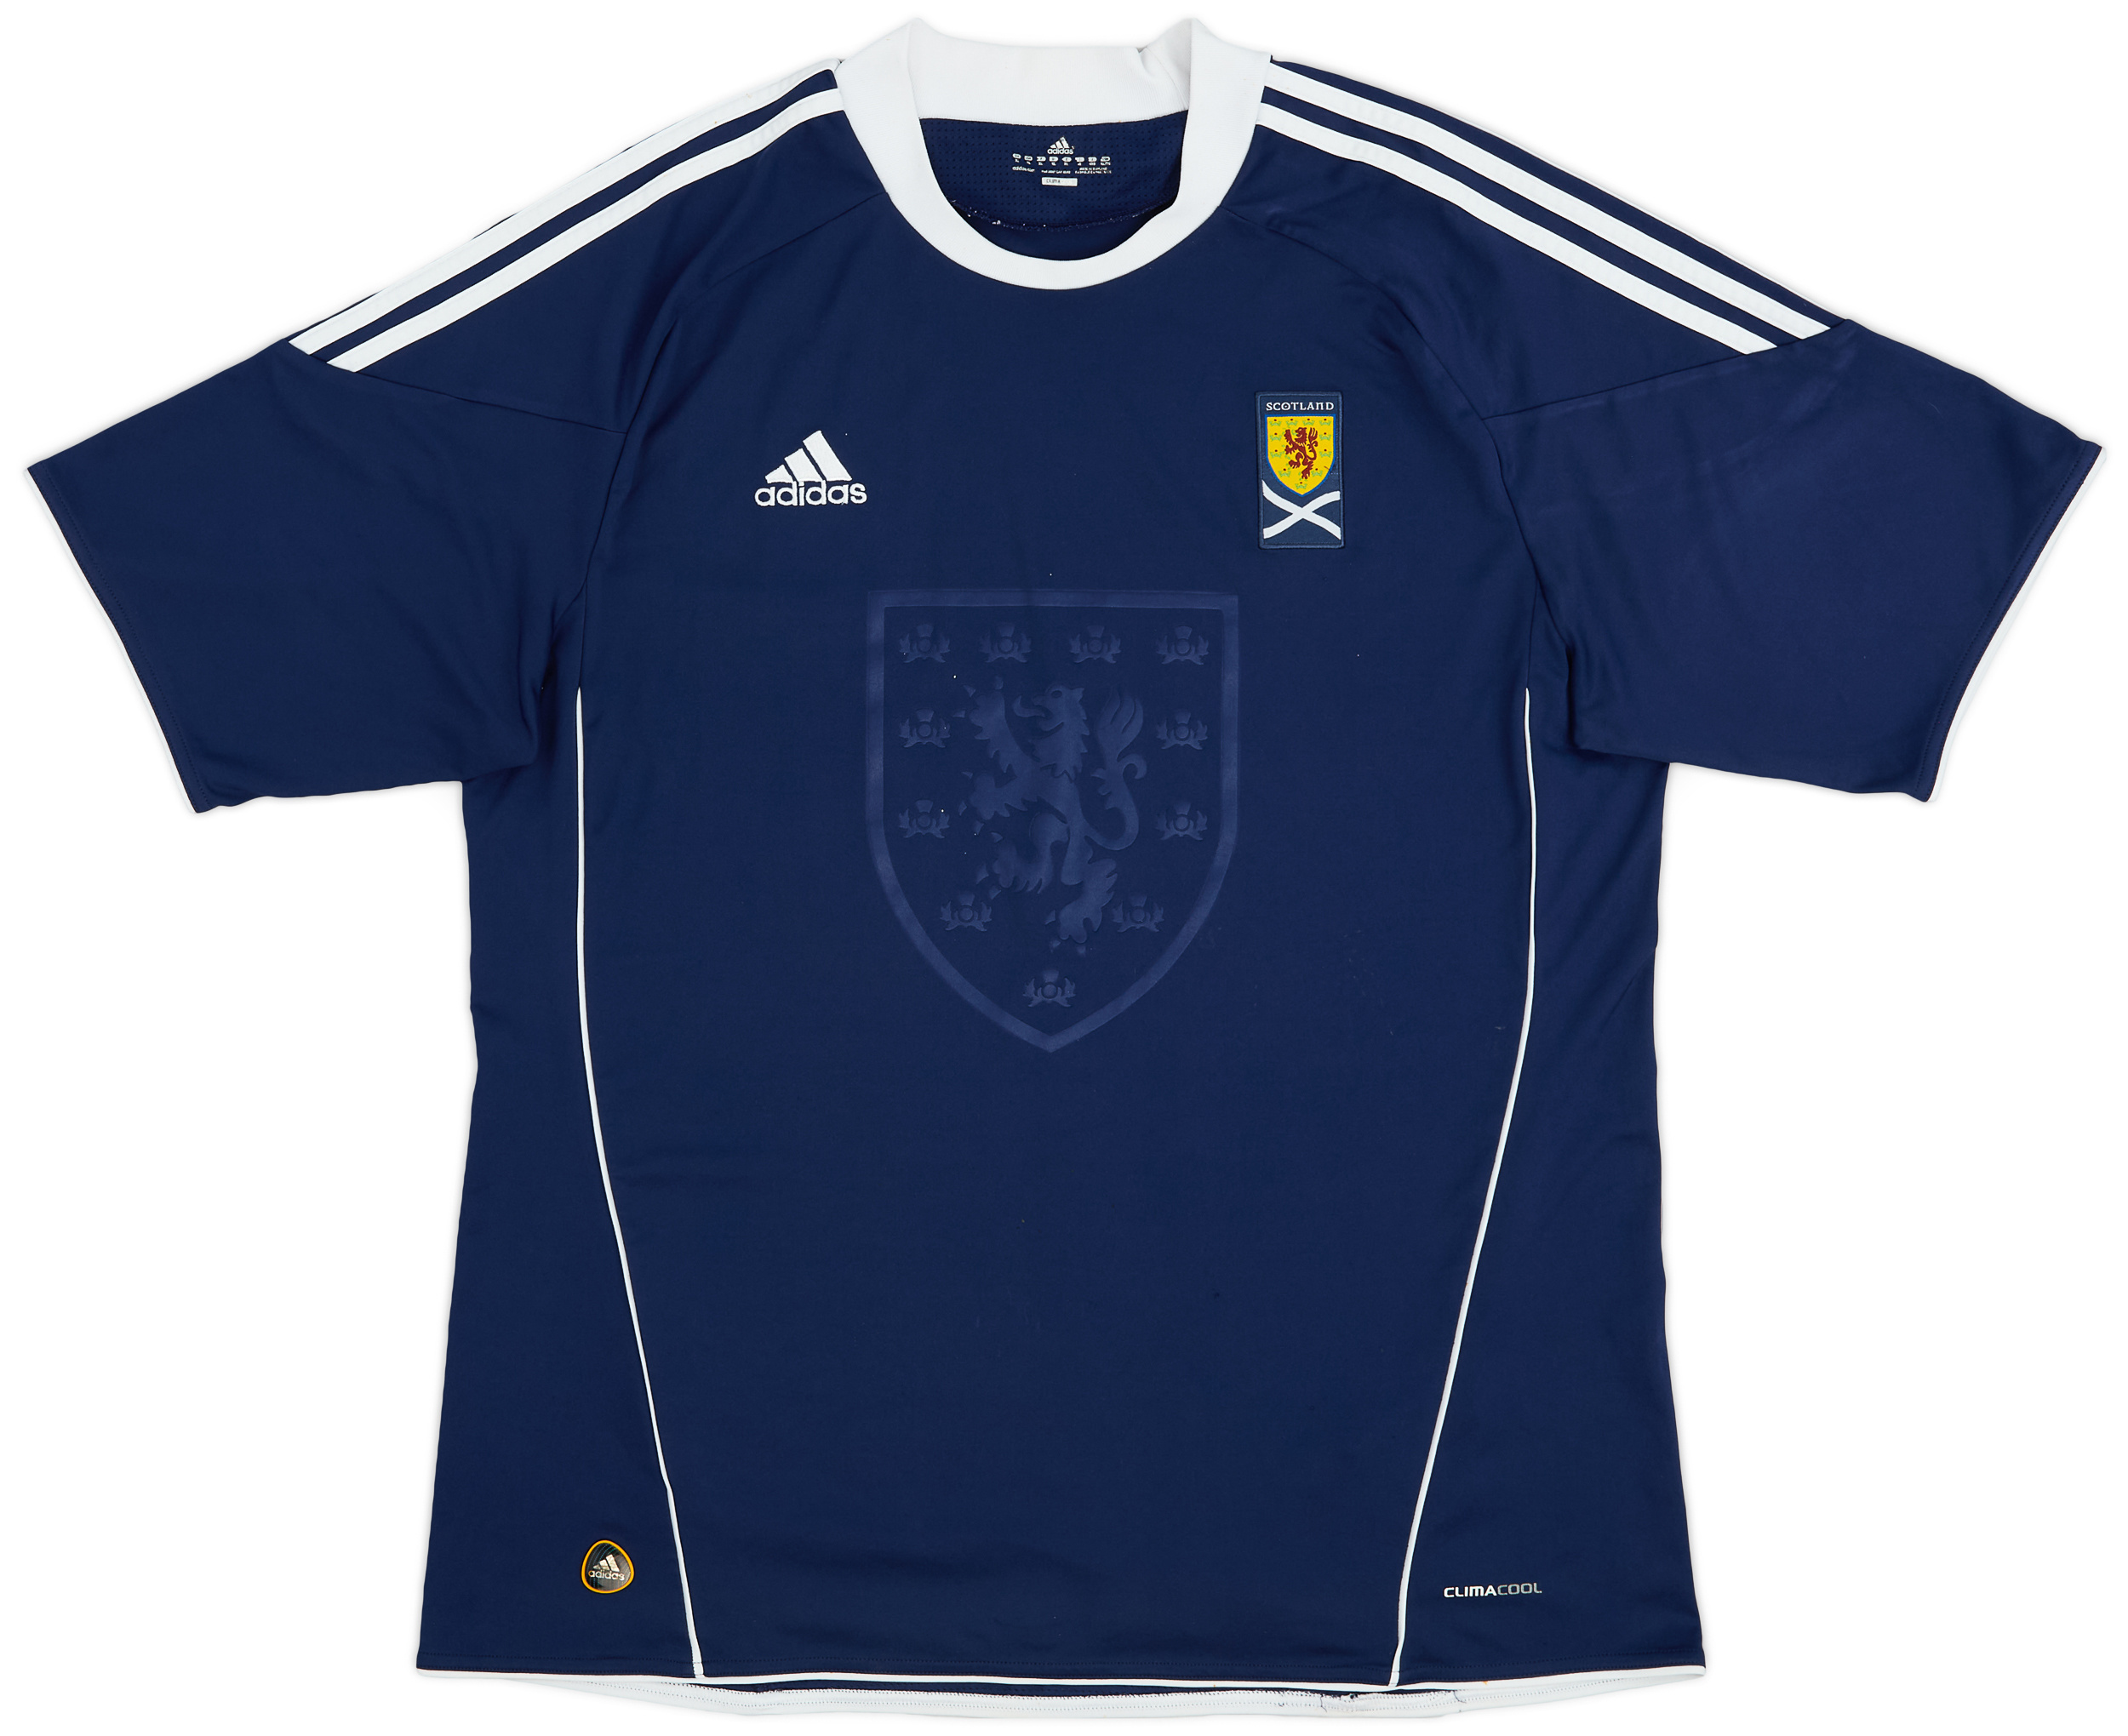 2010-11 Scotland Home Shirt - 8/10 - ()